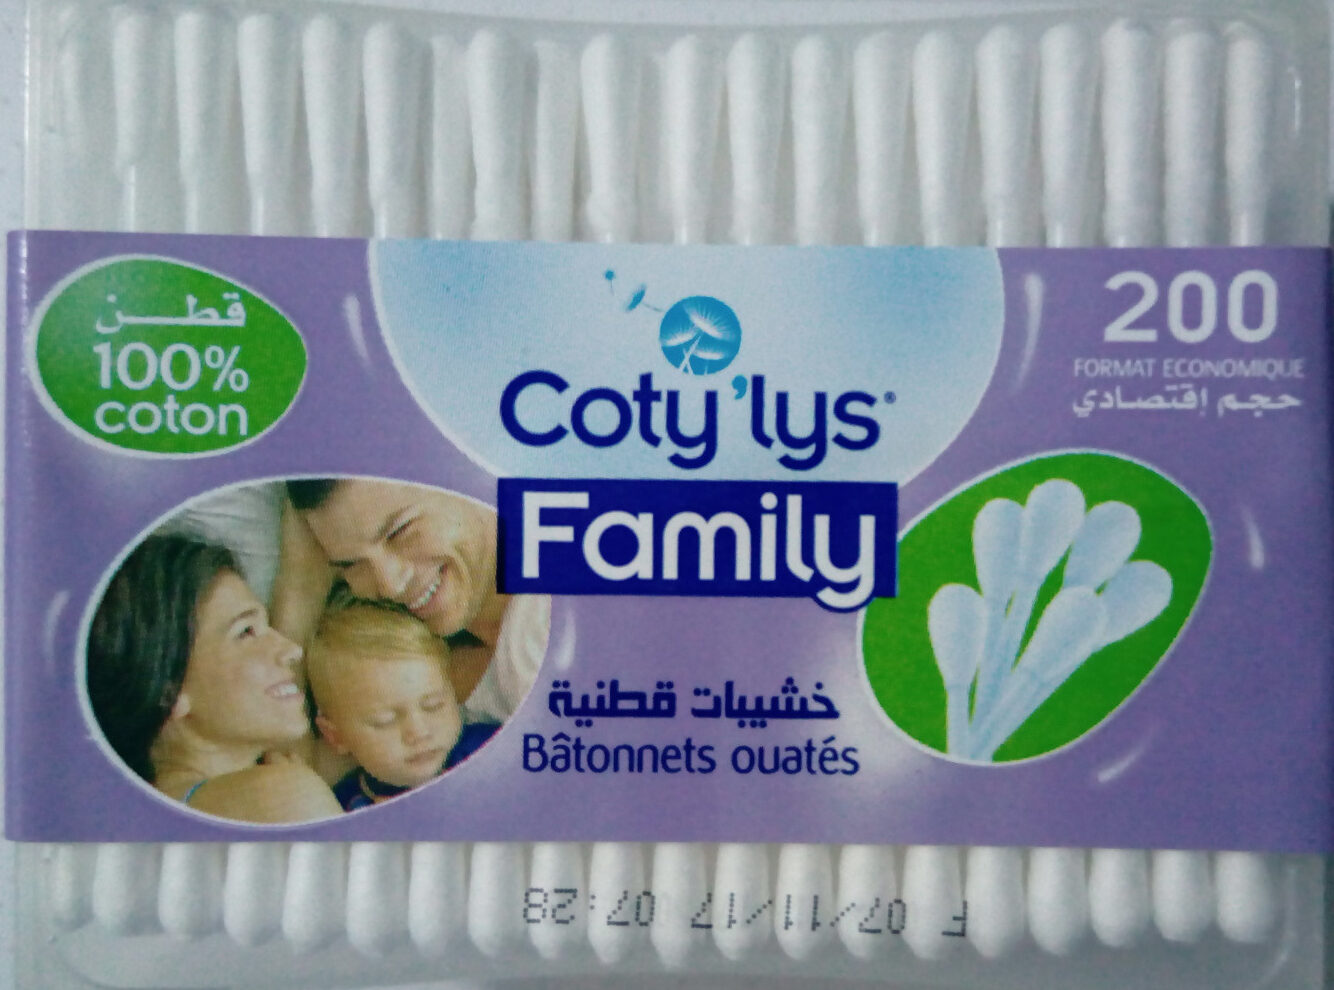 Coty'lys Family batonnets ouatés - Produkt - fr